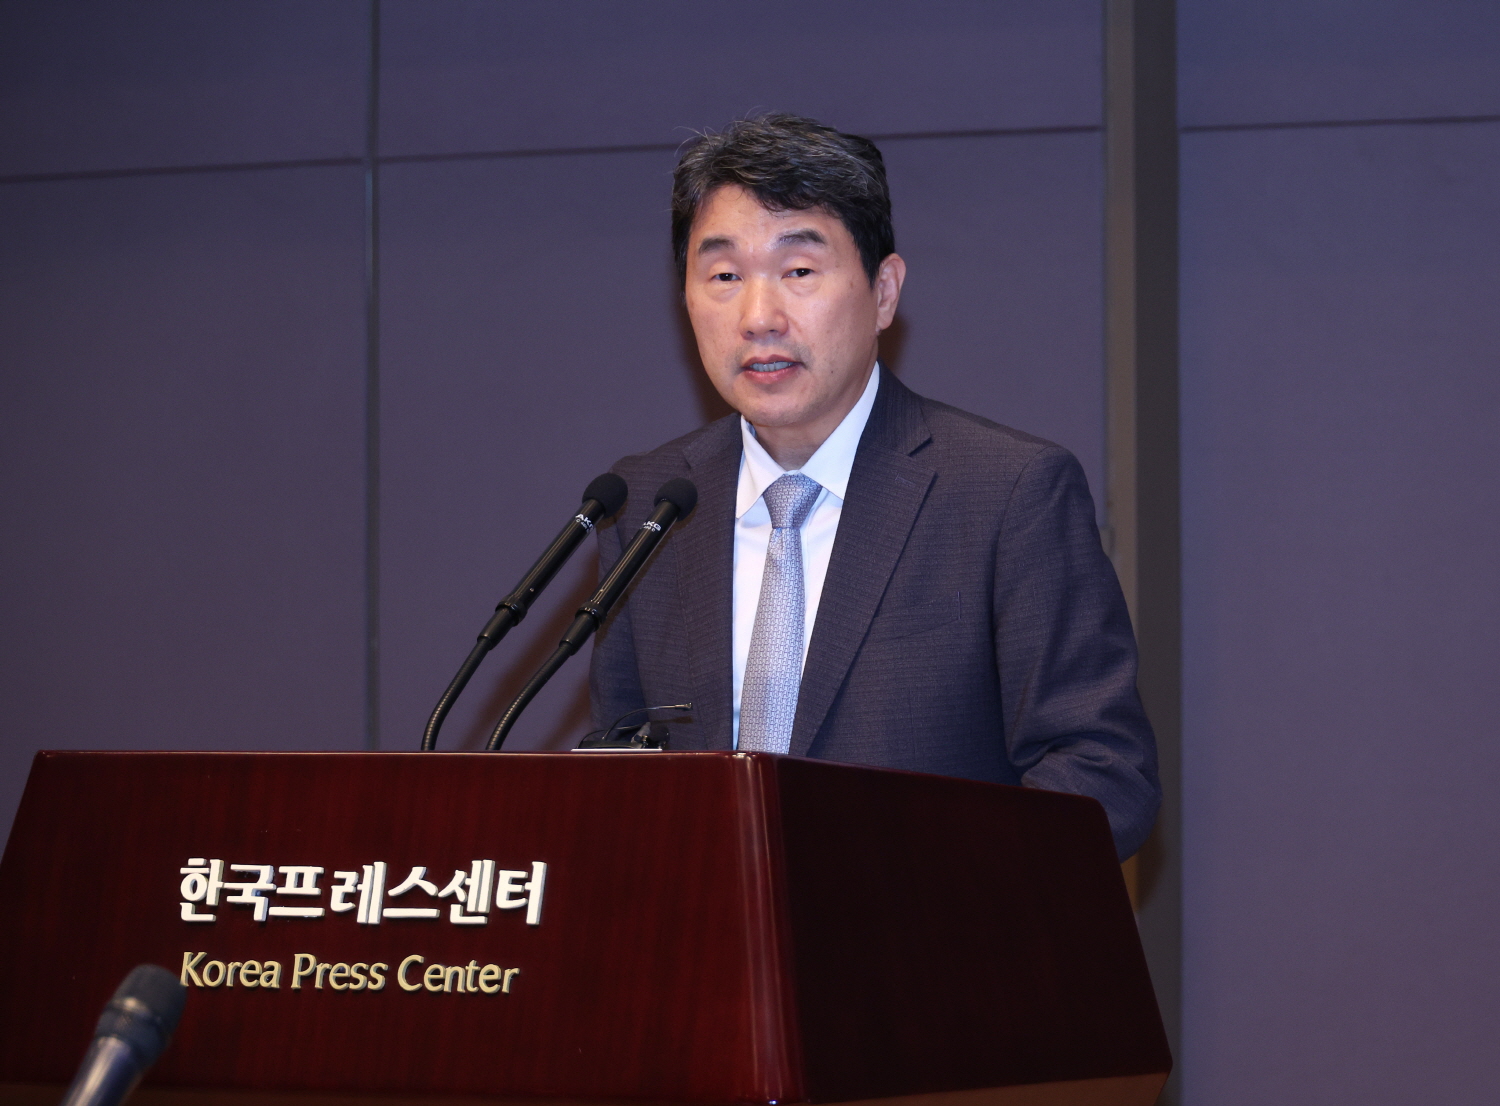 이주호 부총리 겸 교육부장관은 9월 18일(월), 한국프레스센터에서 열리는 「학교안전 대국민 홍보 캠페인 및 선포식」에 참석했다.